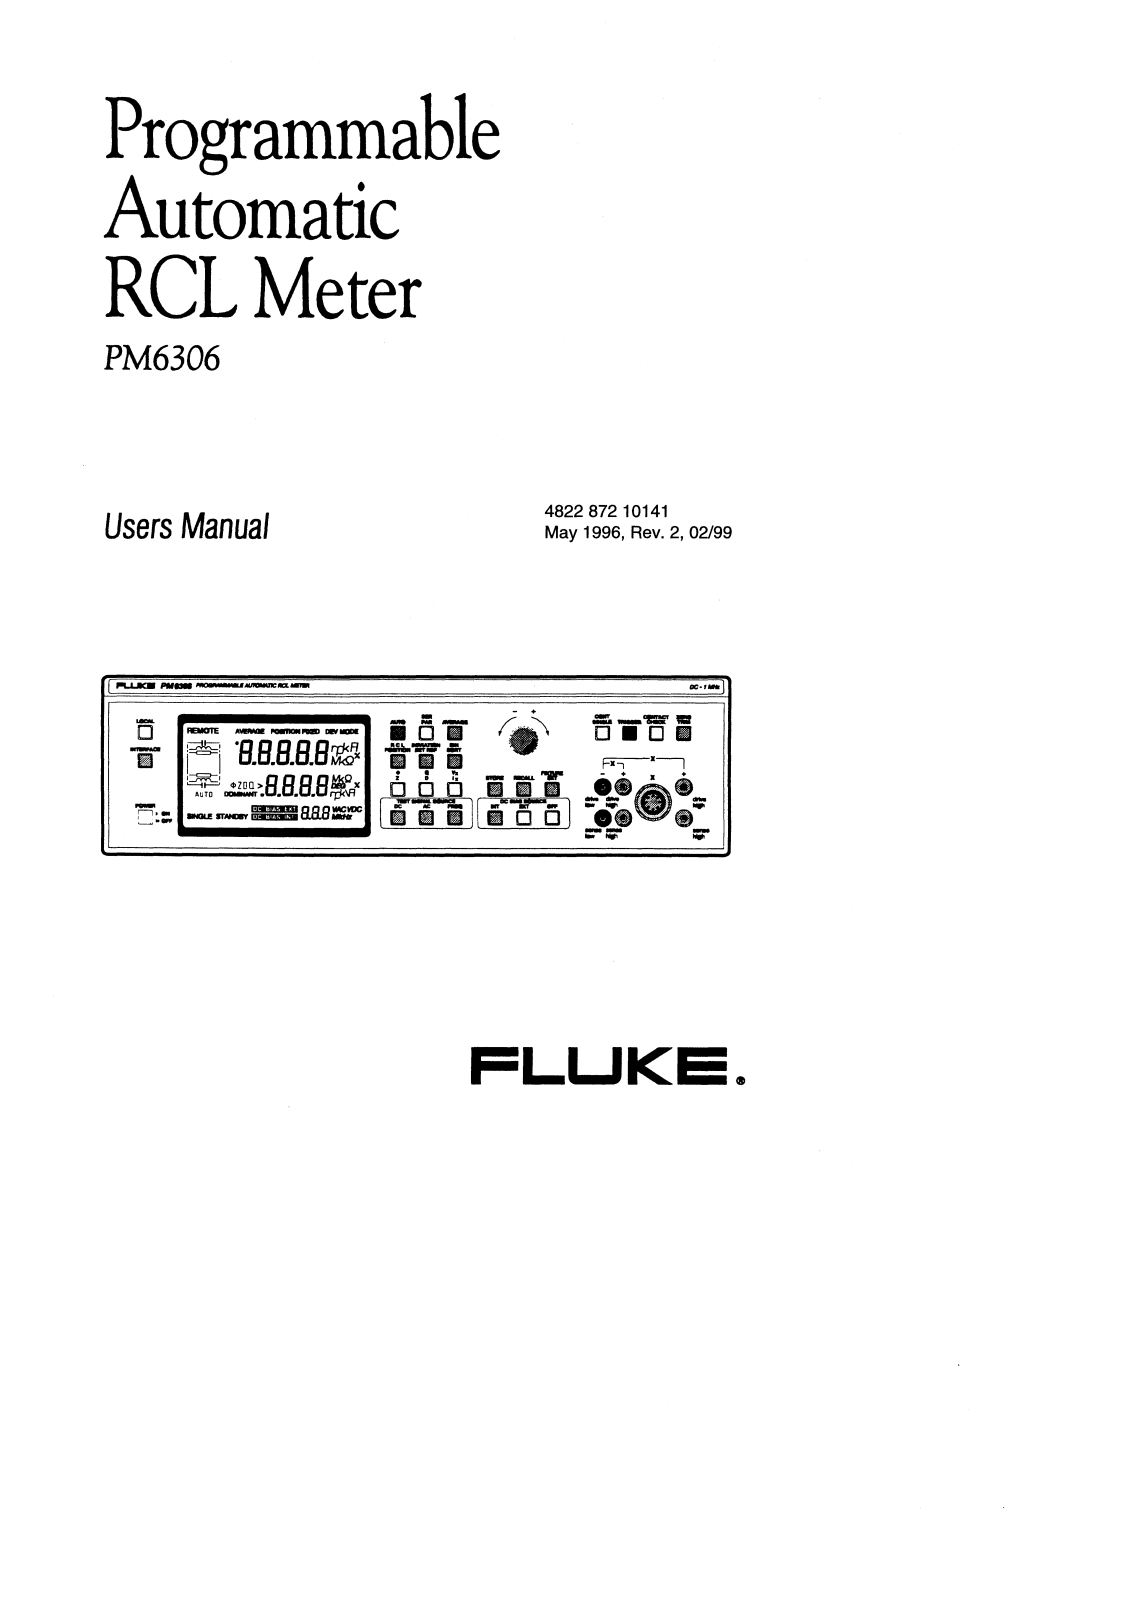 Fluke PM6306 User Manual